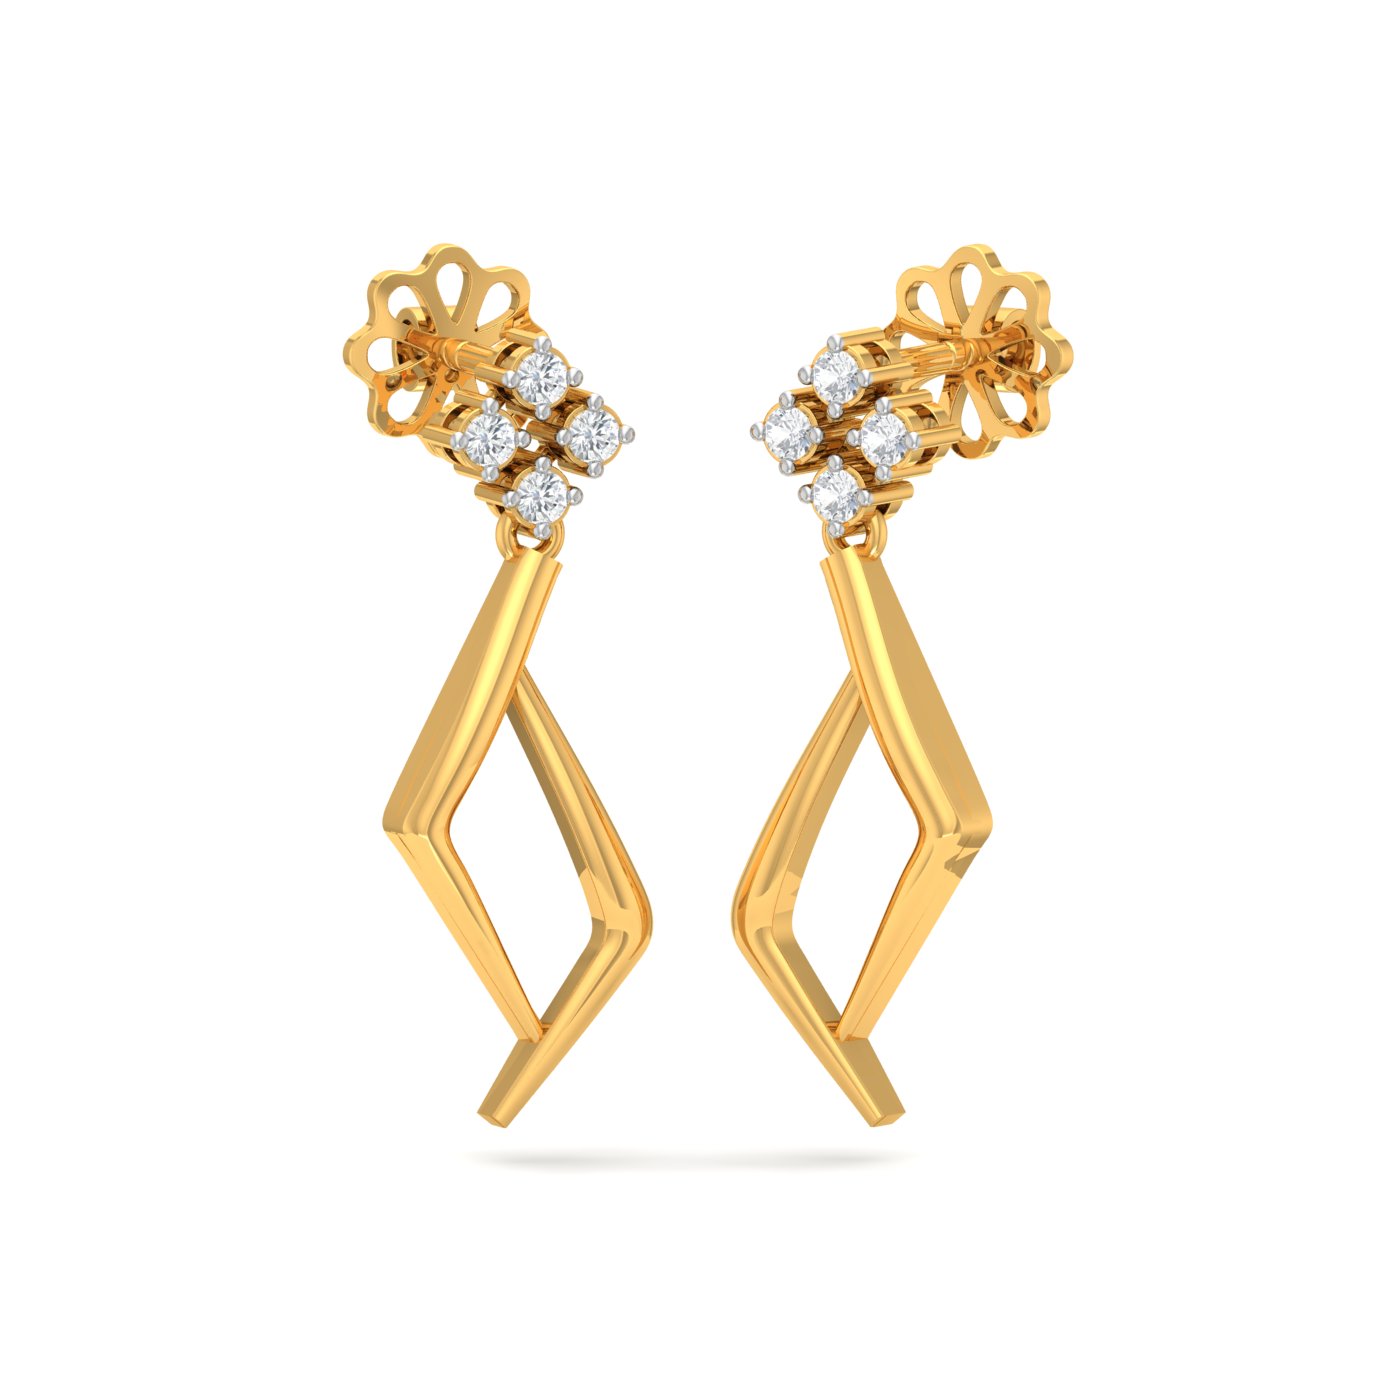 Gold Earrings Design in 2 Grams | RYLEE DIAMOND DROP EARRINGS